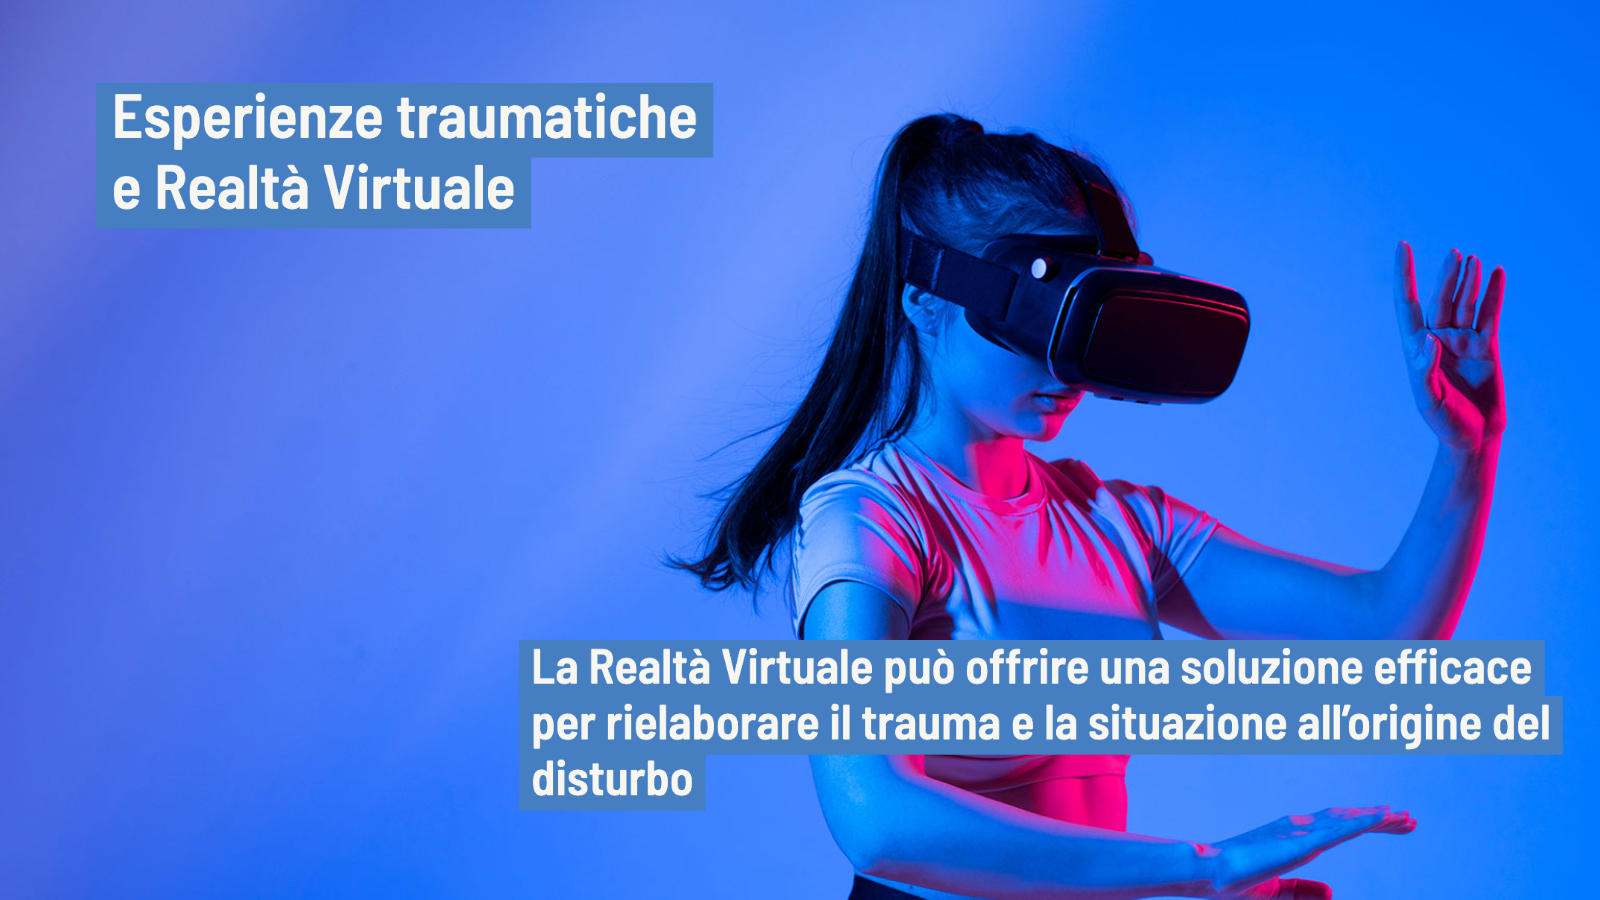 Esperienze traumatiche e Realtà Virtuale: le potenzialità del trattamento